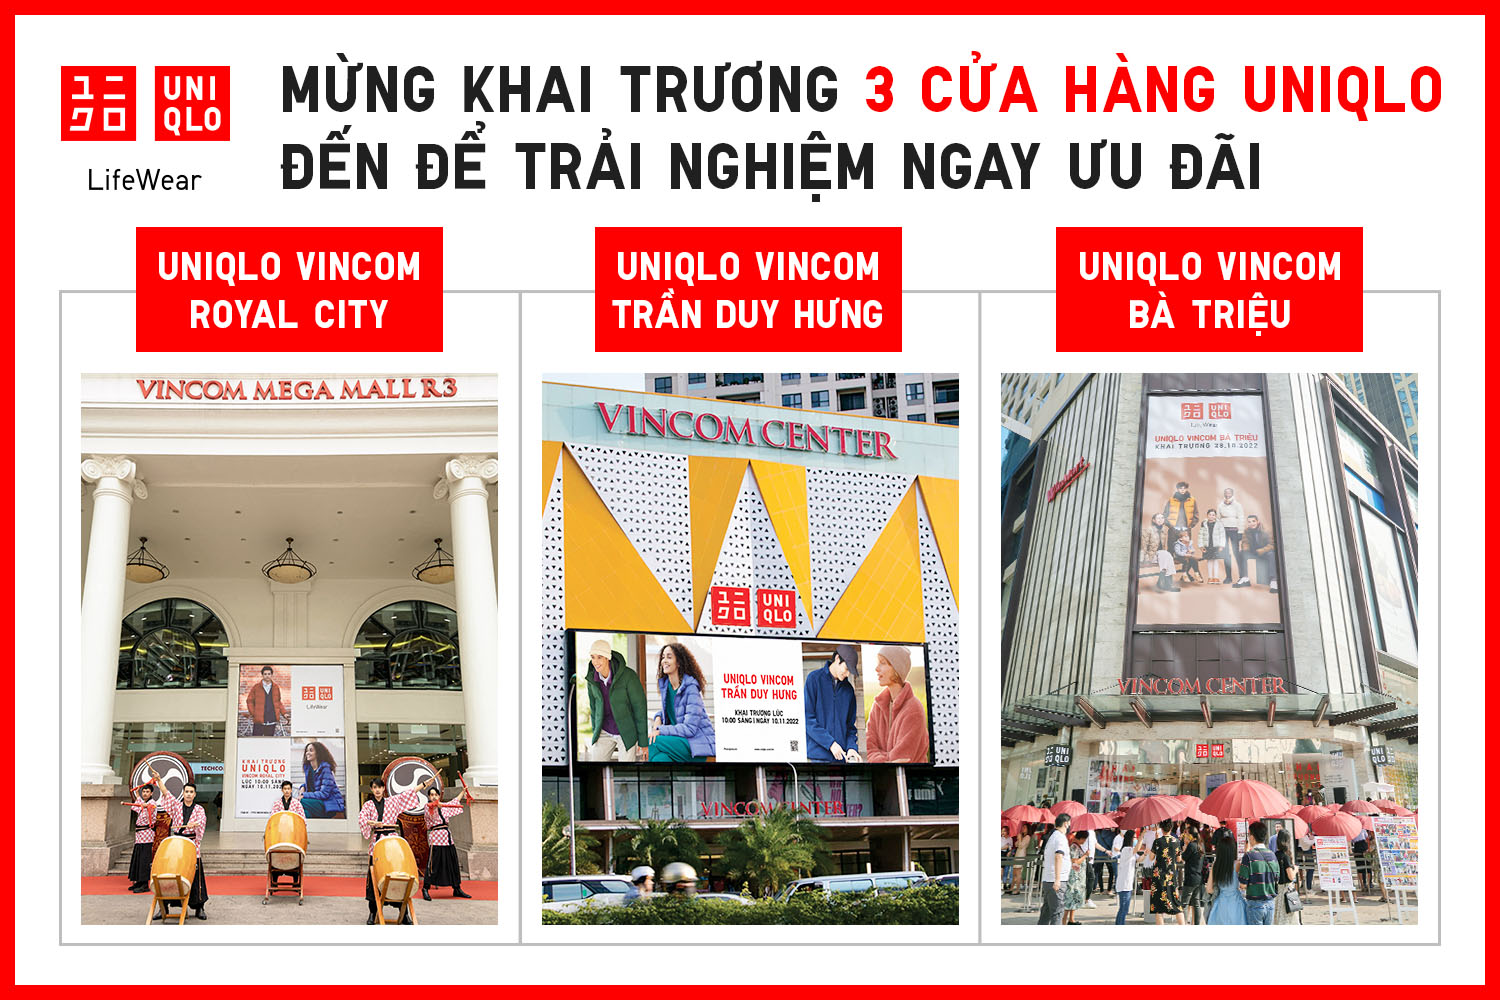 UNIQLO khai trương cửa hàng thứ 13 tại Việt Nam  Trang Thông tin điện tử  tổng hợp Thi đua  Khen thưởng